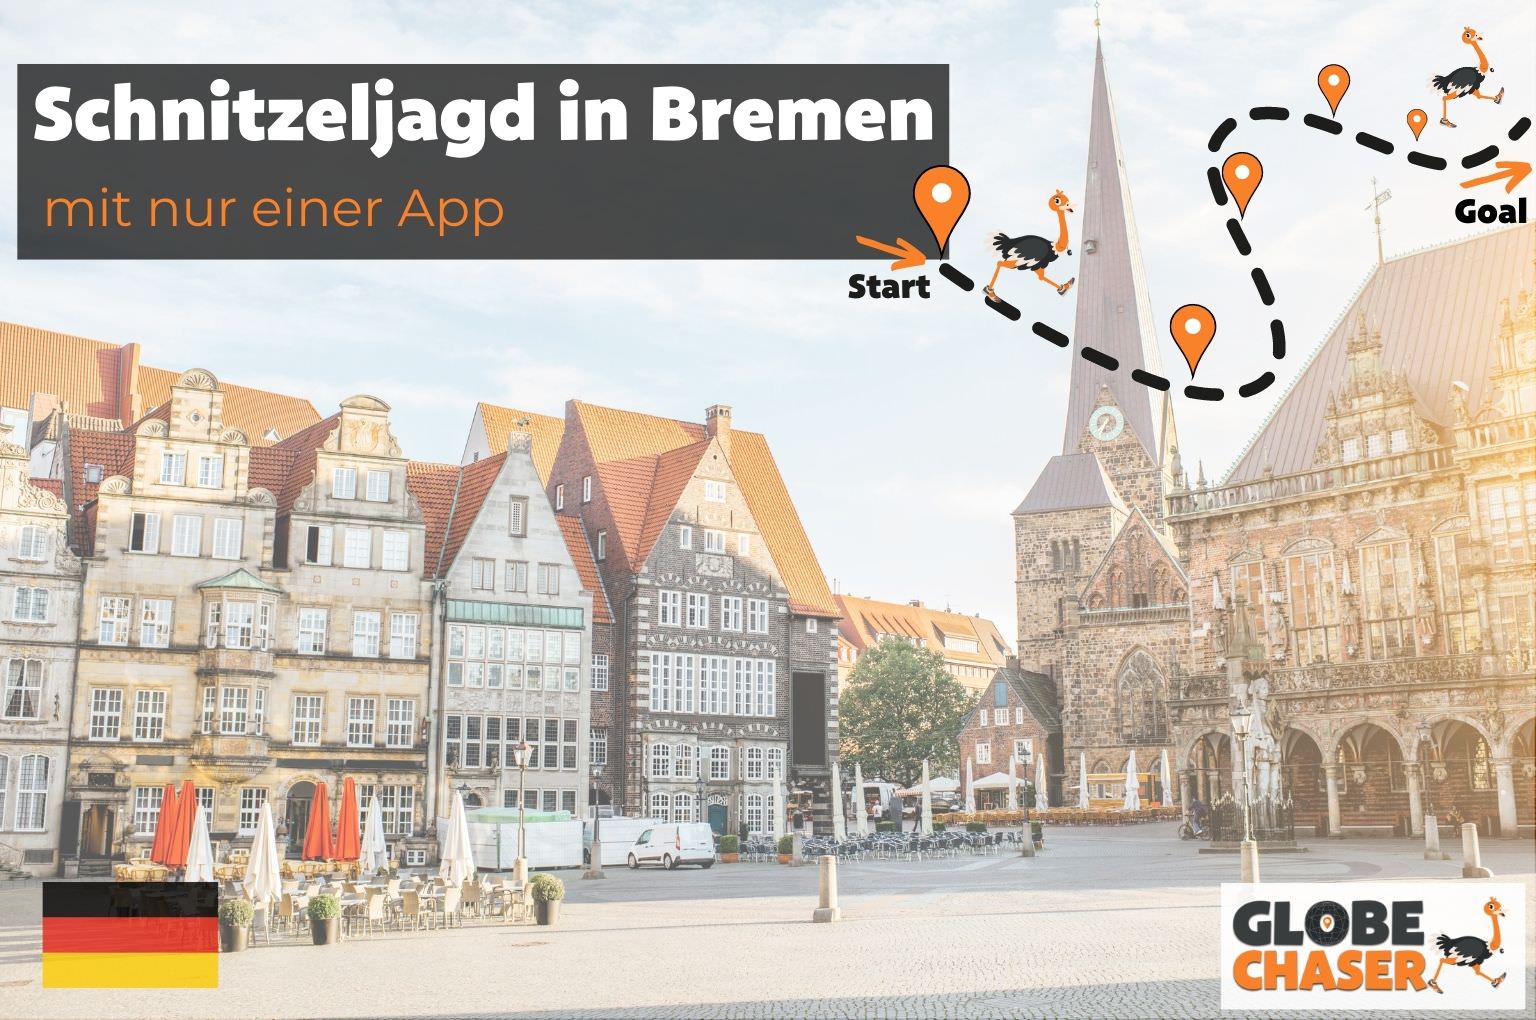 Schnitzeljagd in Bremen mit App - Globe Chaser Erlebnisse Deutschland